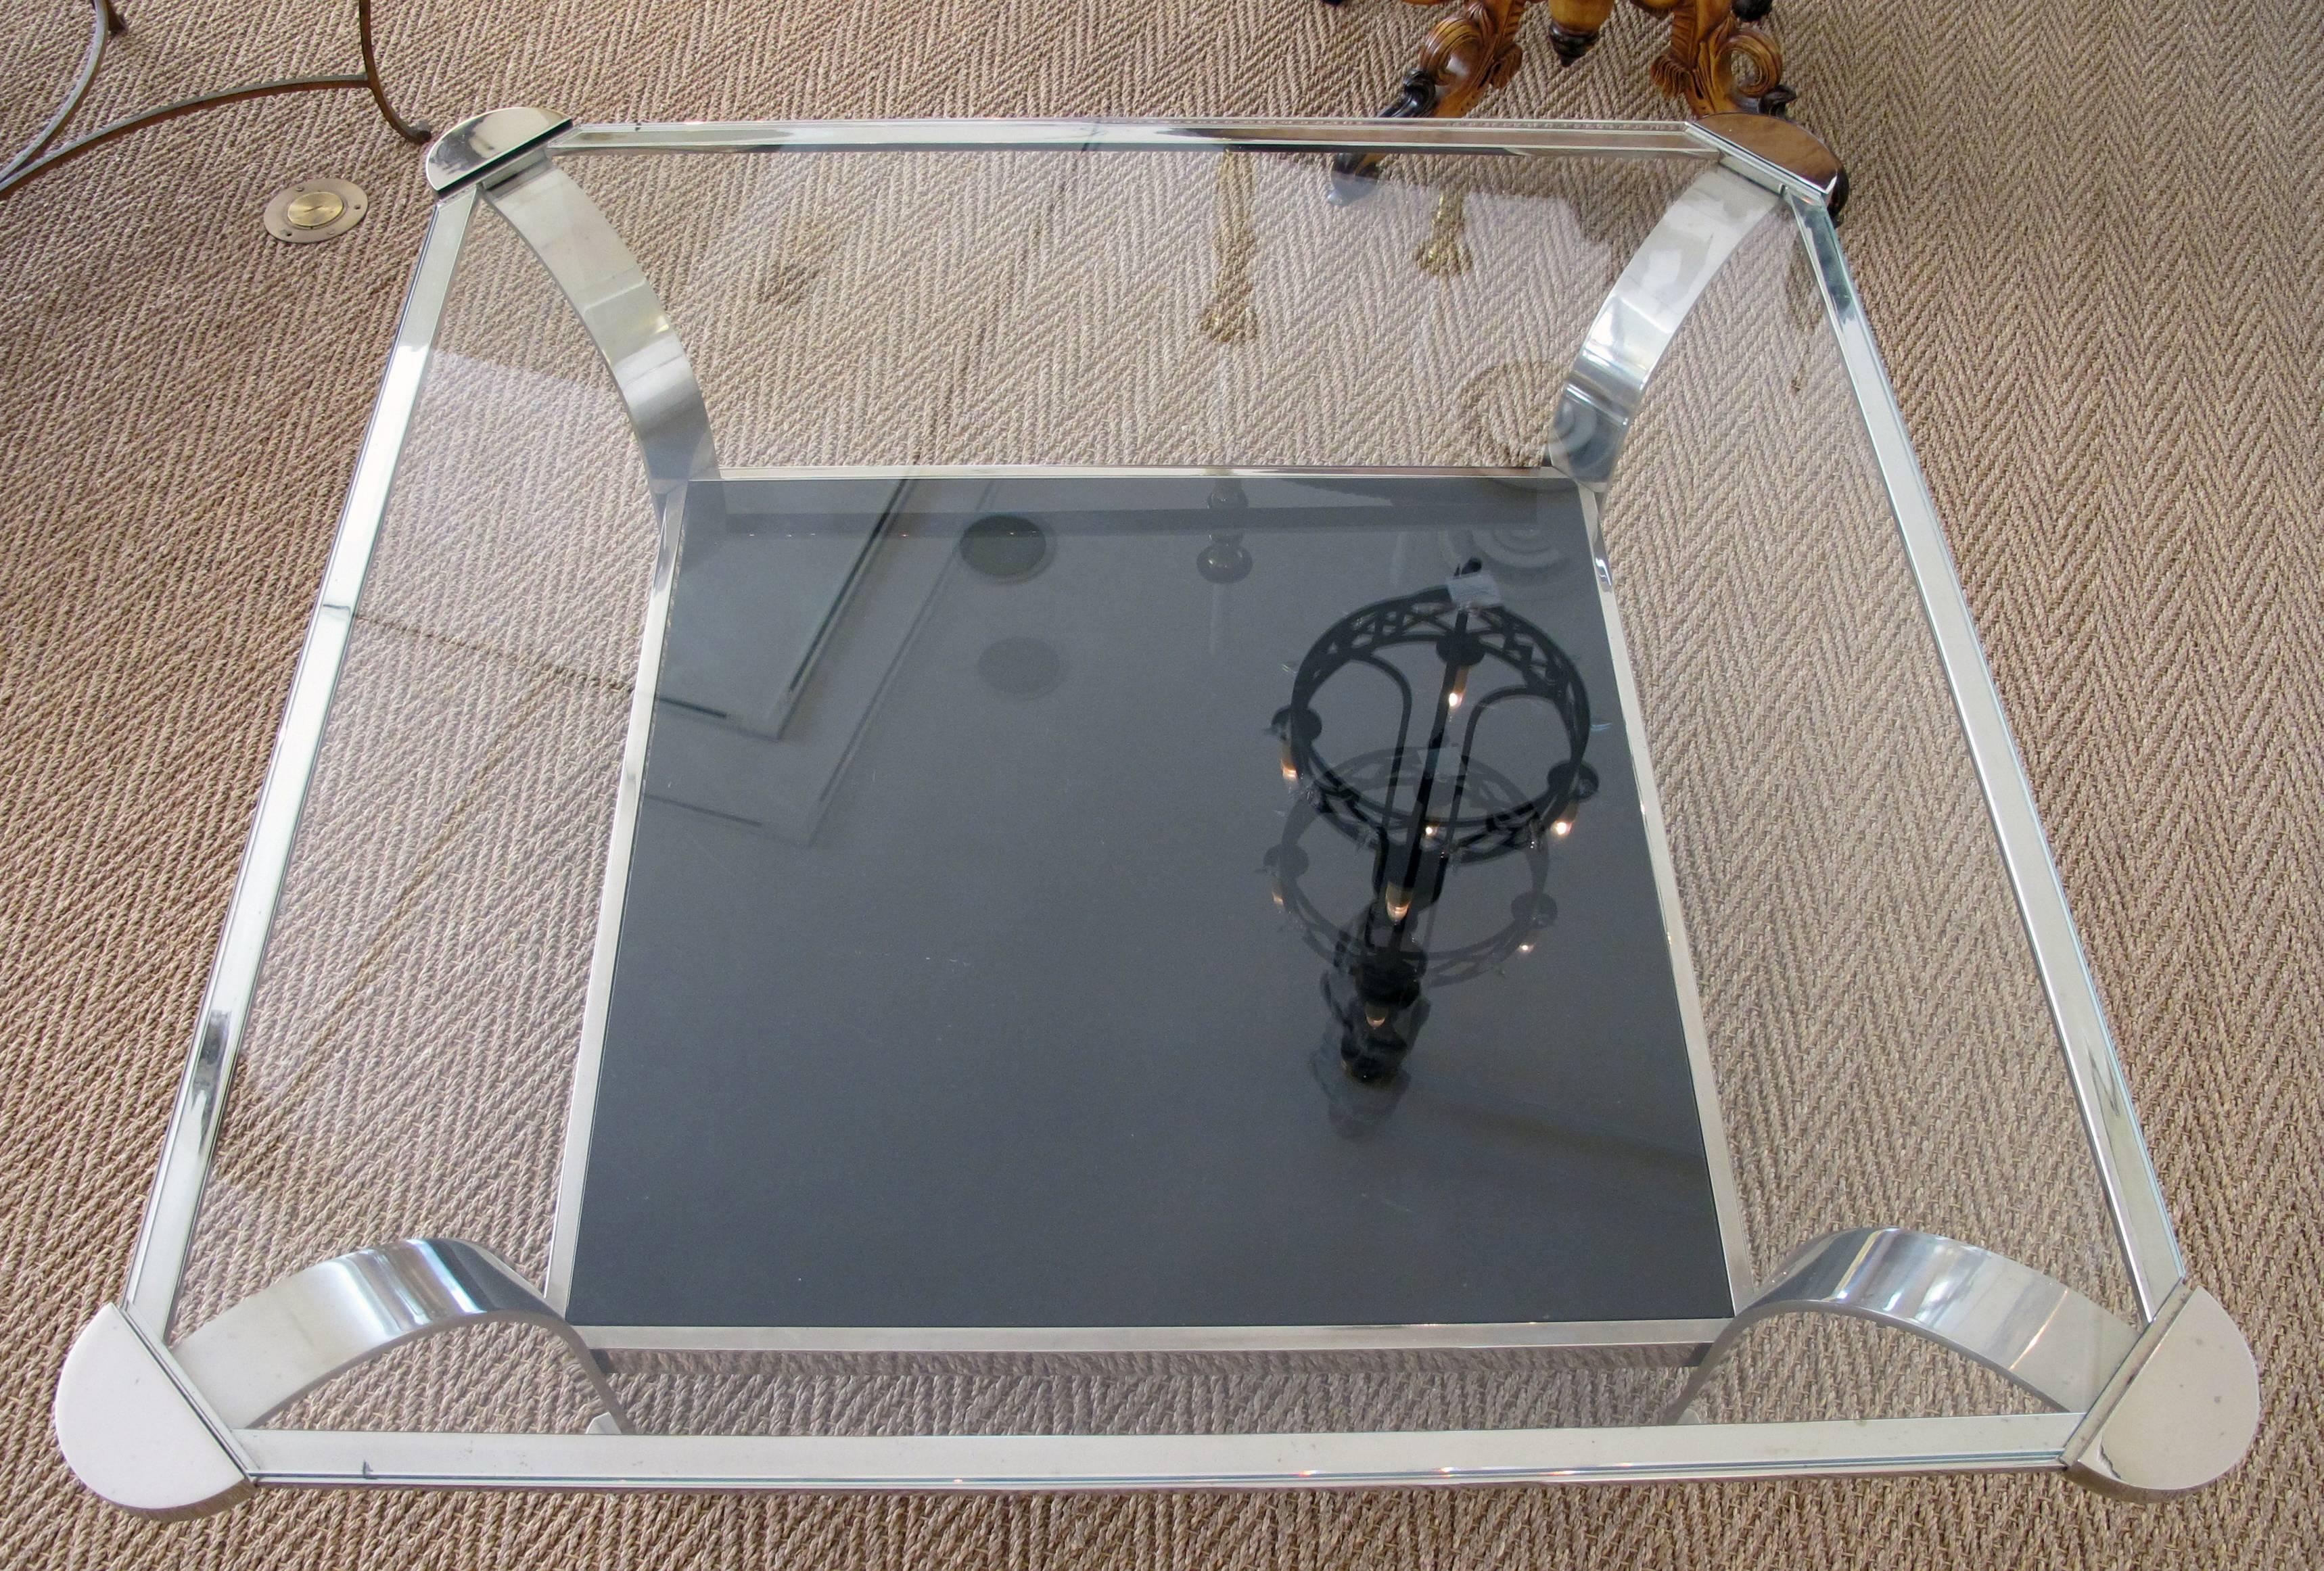 Table basse carrée en acier des années 1970, de grande taille et aux formes harmonieuses, avec plateau en verre transparent et tablette inférieure en verre noir ; le plateau carré aux coins arrondis exagérés est inséré dans un plateau en verre